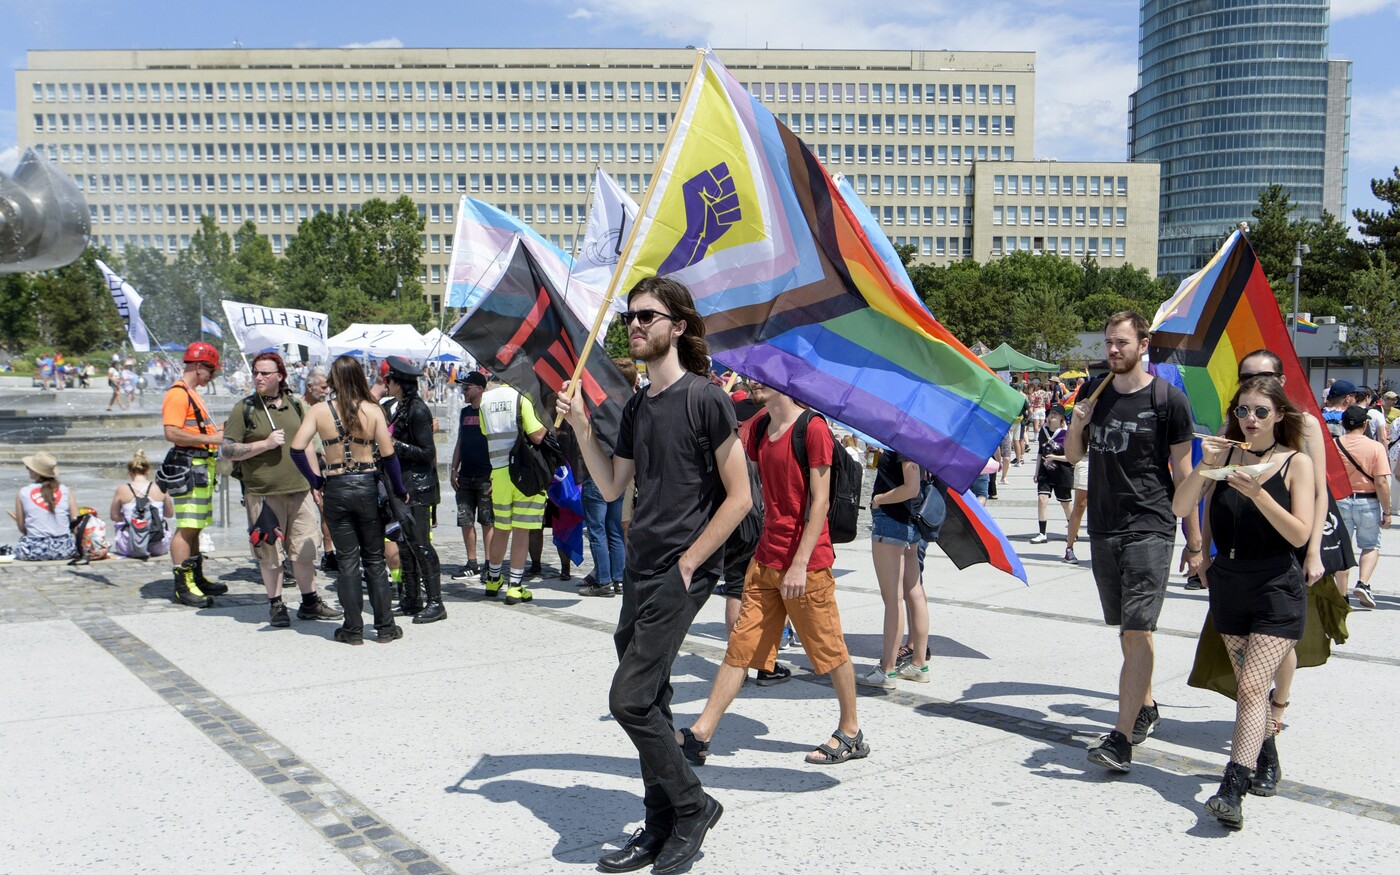 Terrortámadásra készültek a pozsonyi Szivárványos Pride-on